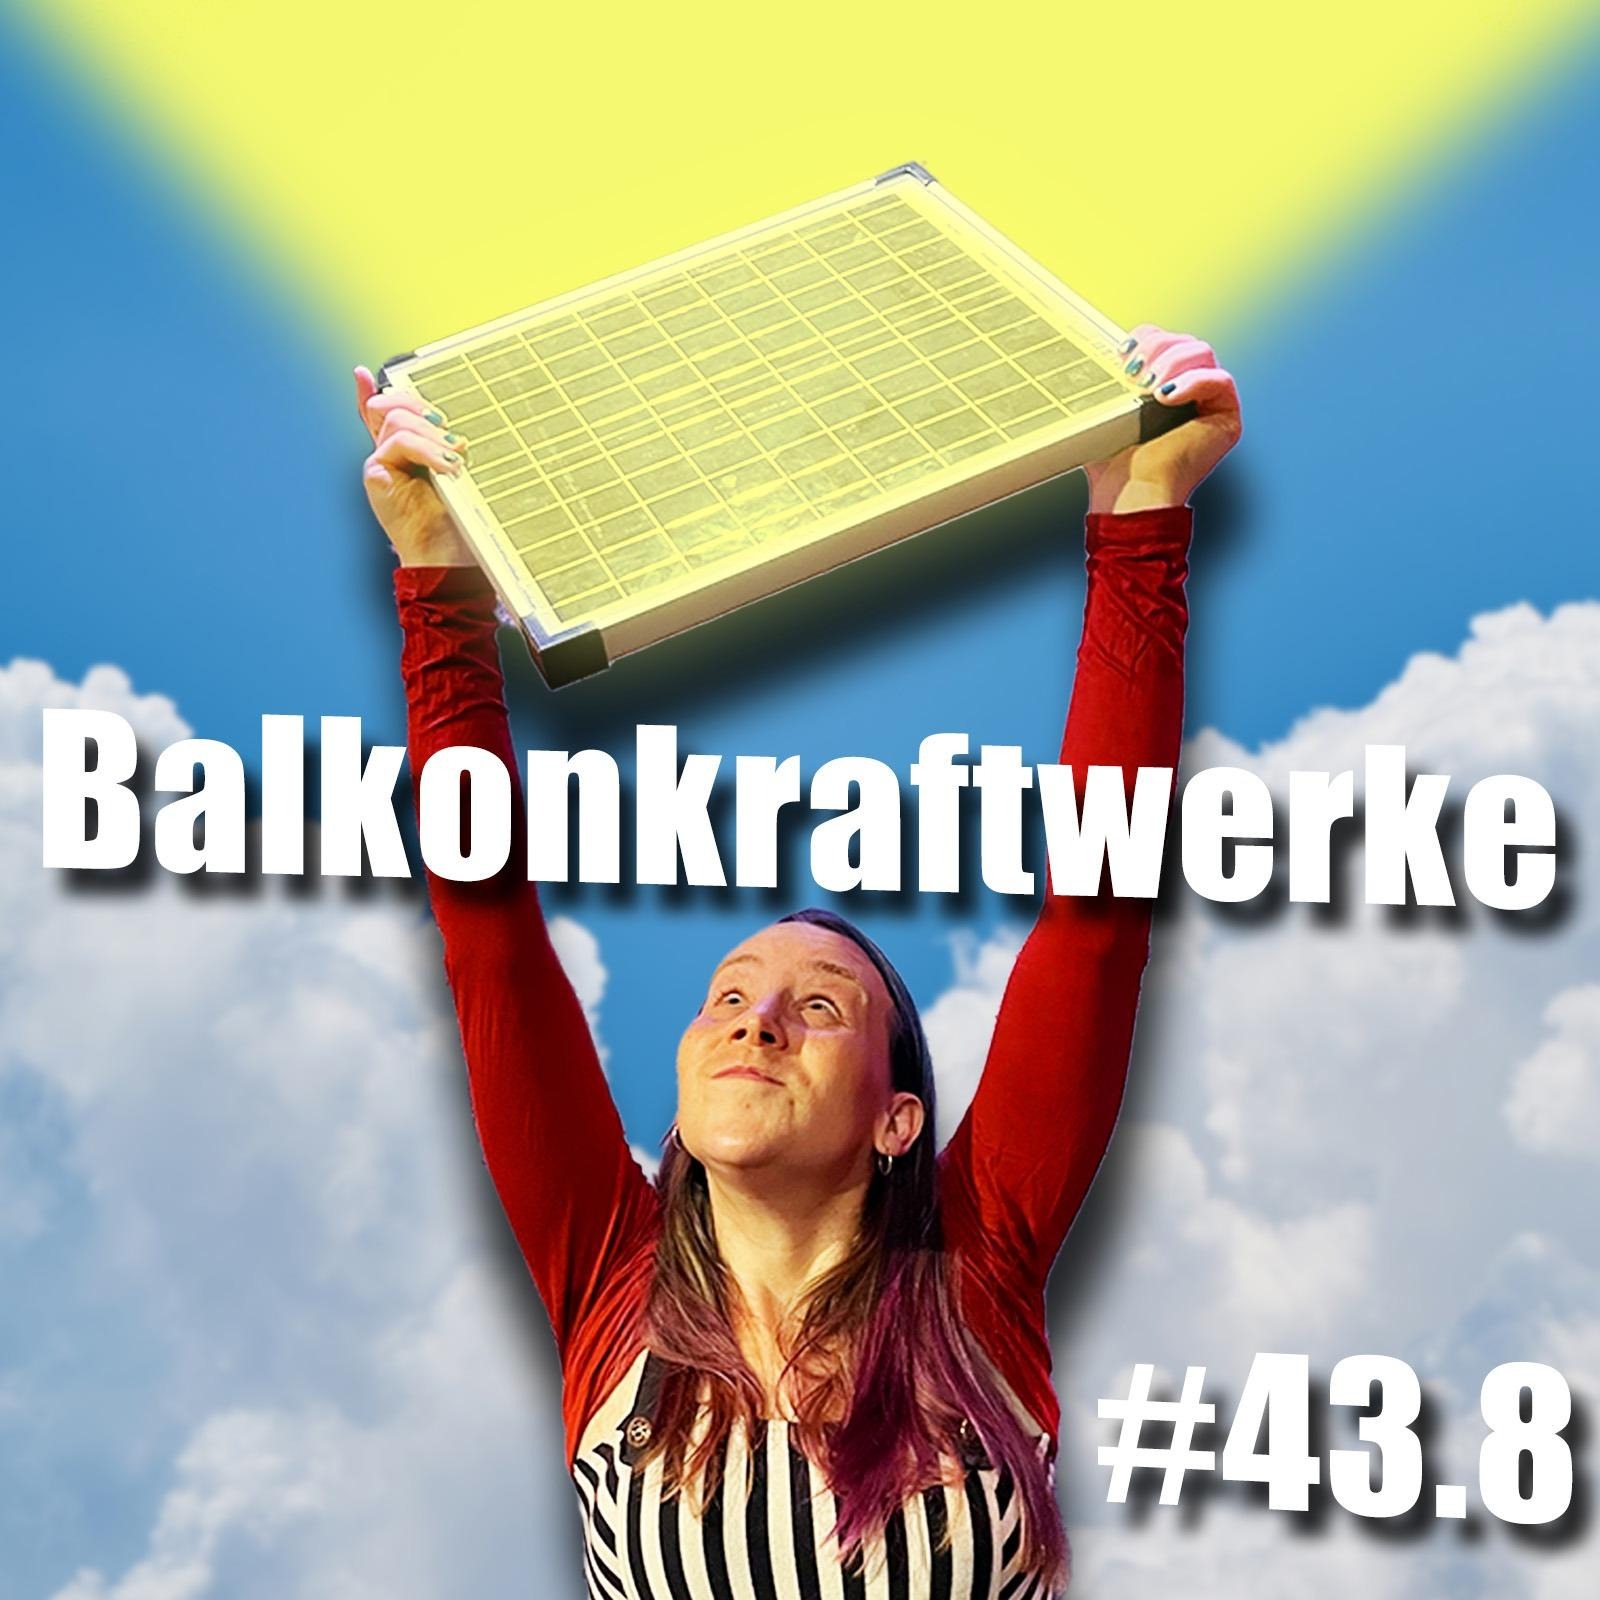 Balkonkraftwerke und selbstgemachter Strom | c’t uplink 43.8